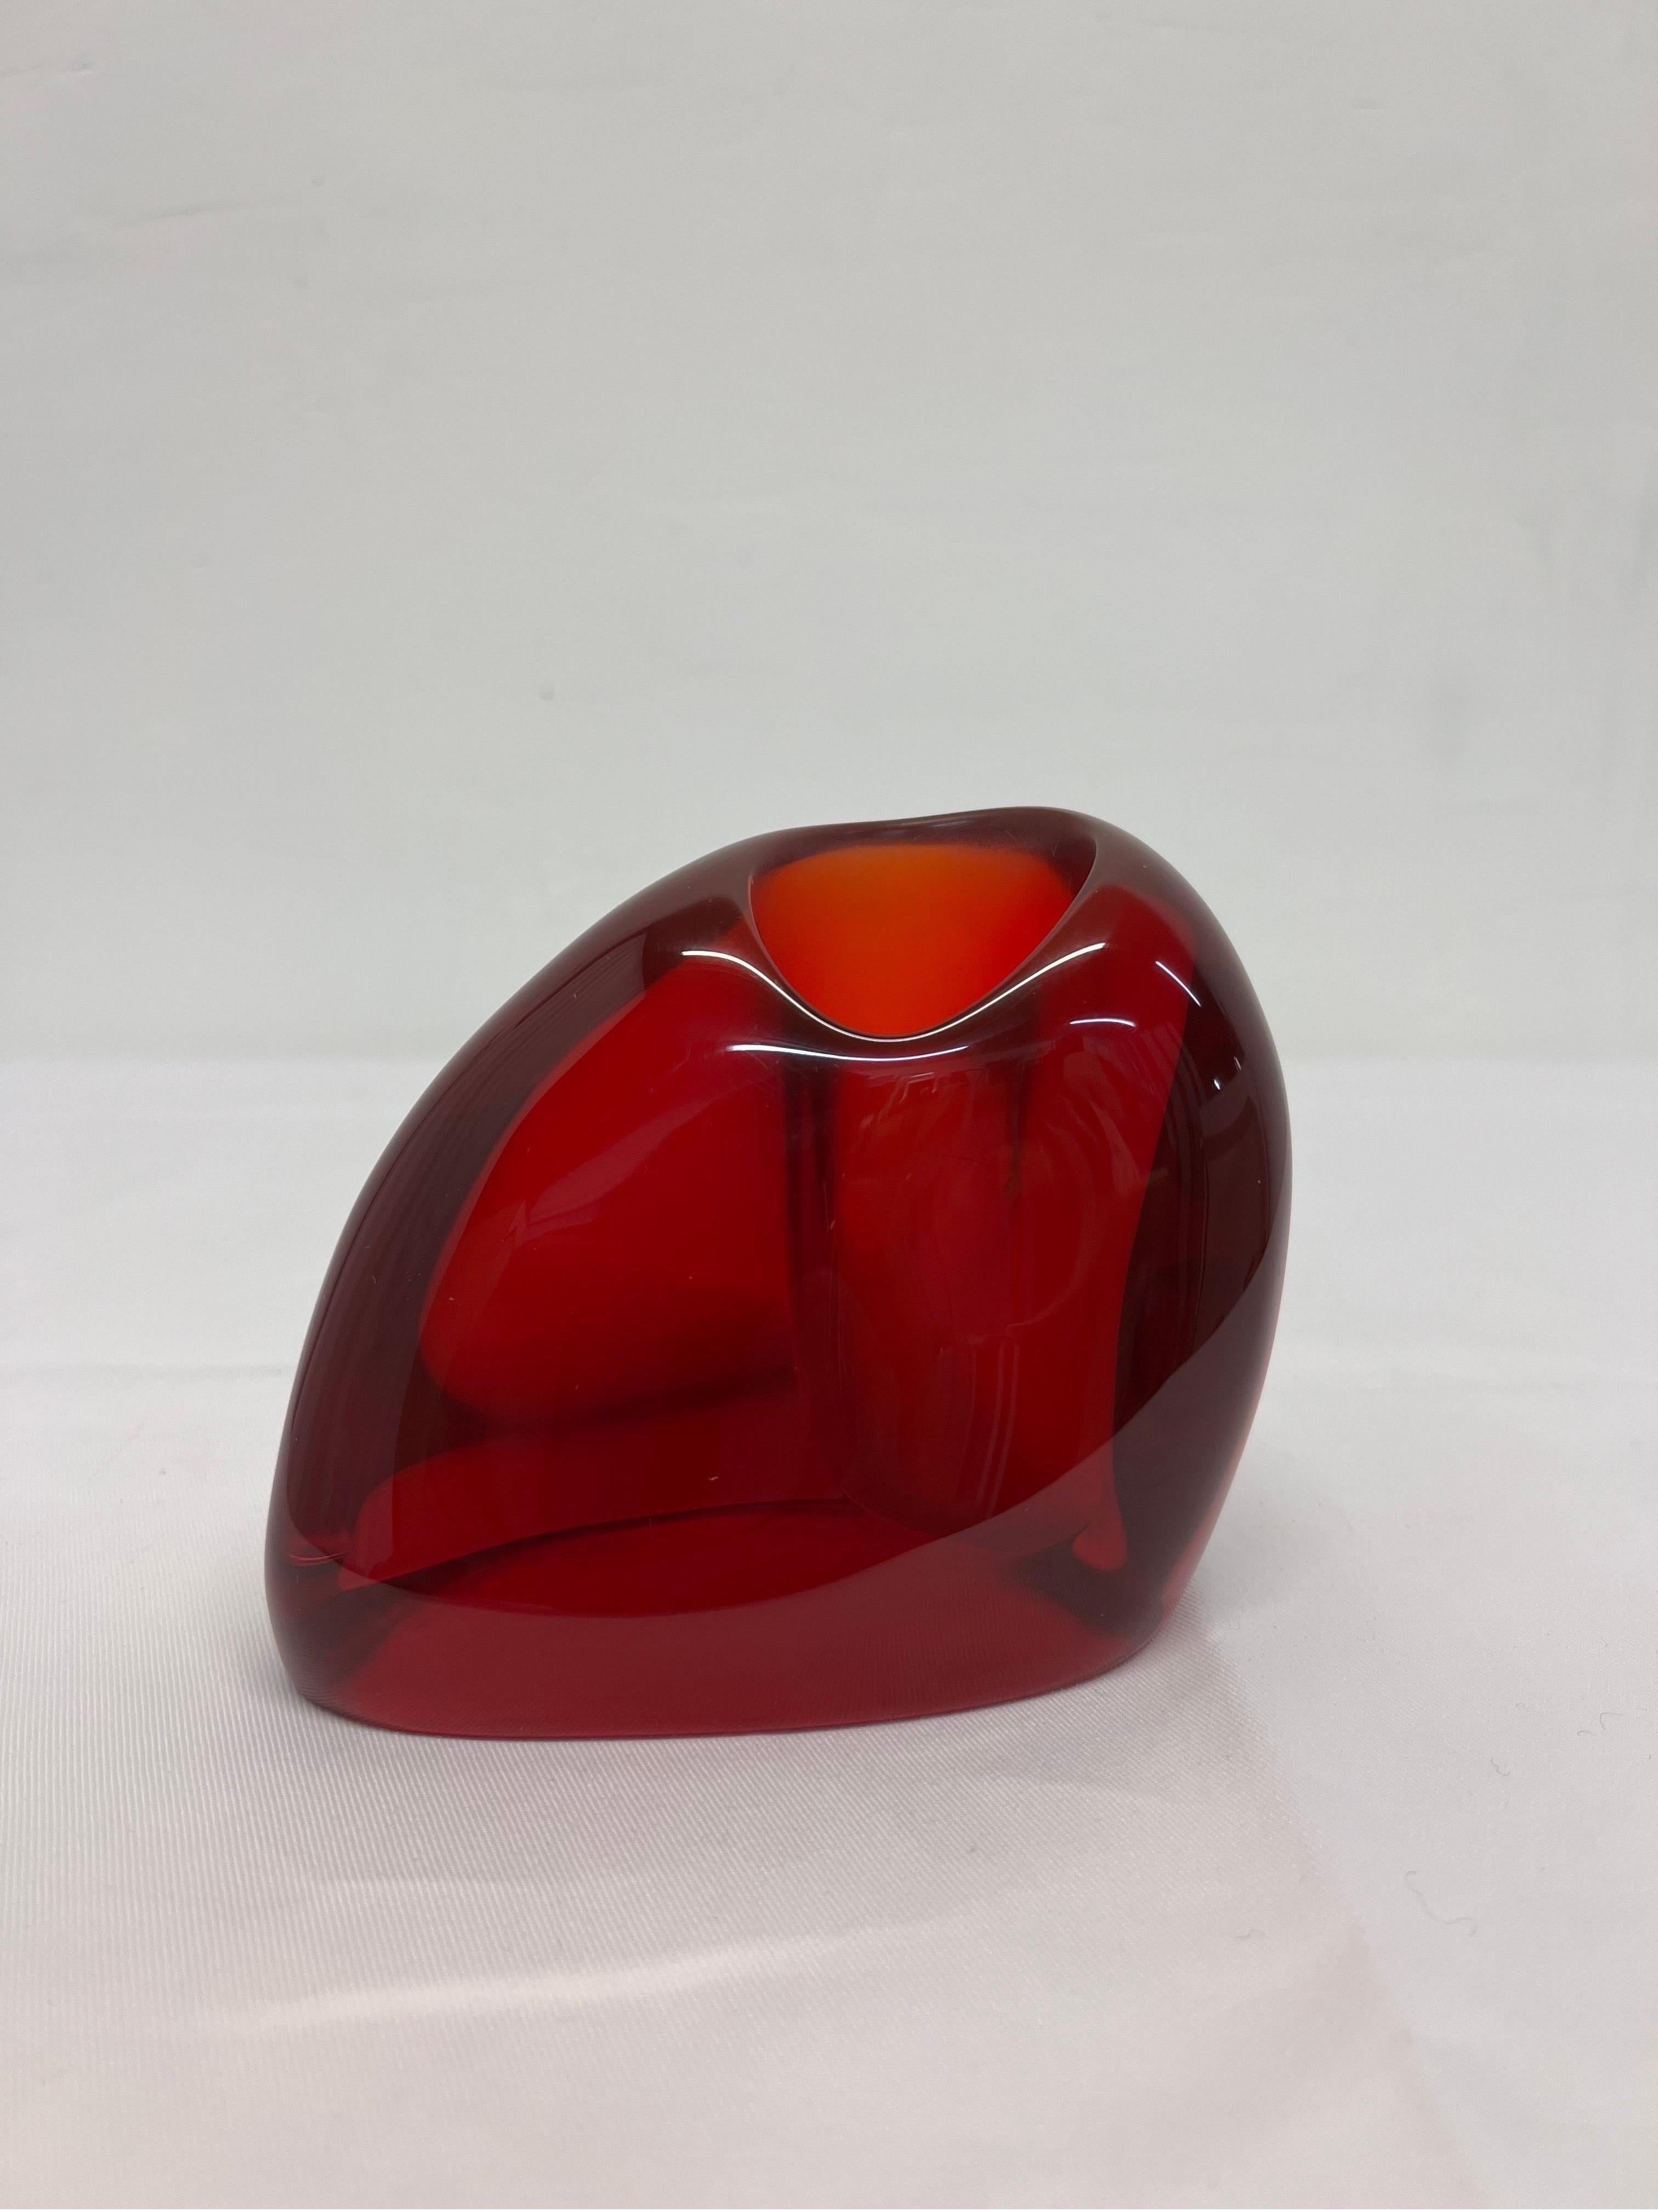 Postmodern translucent red bud vase made of molded resin, Brazil 1980s.